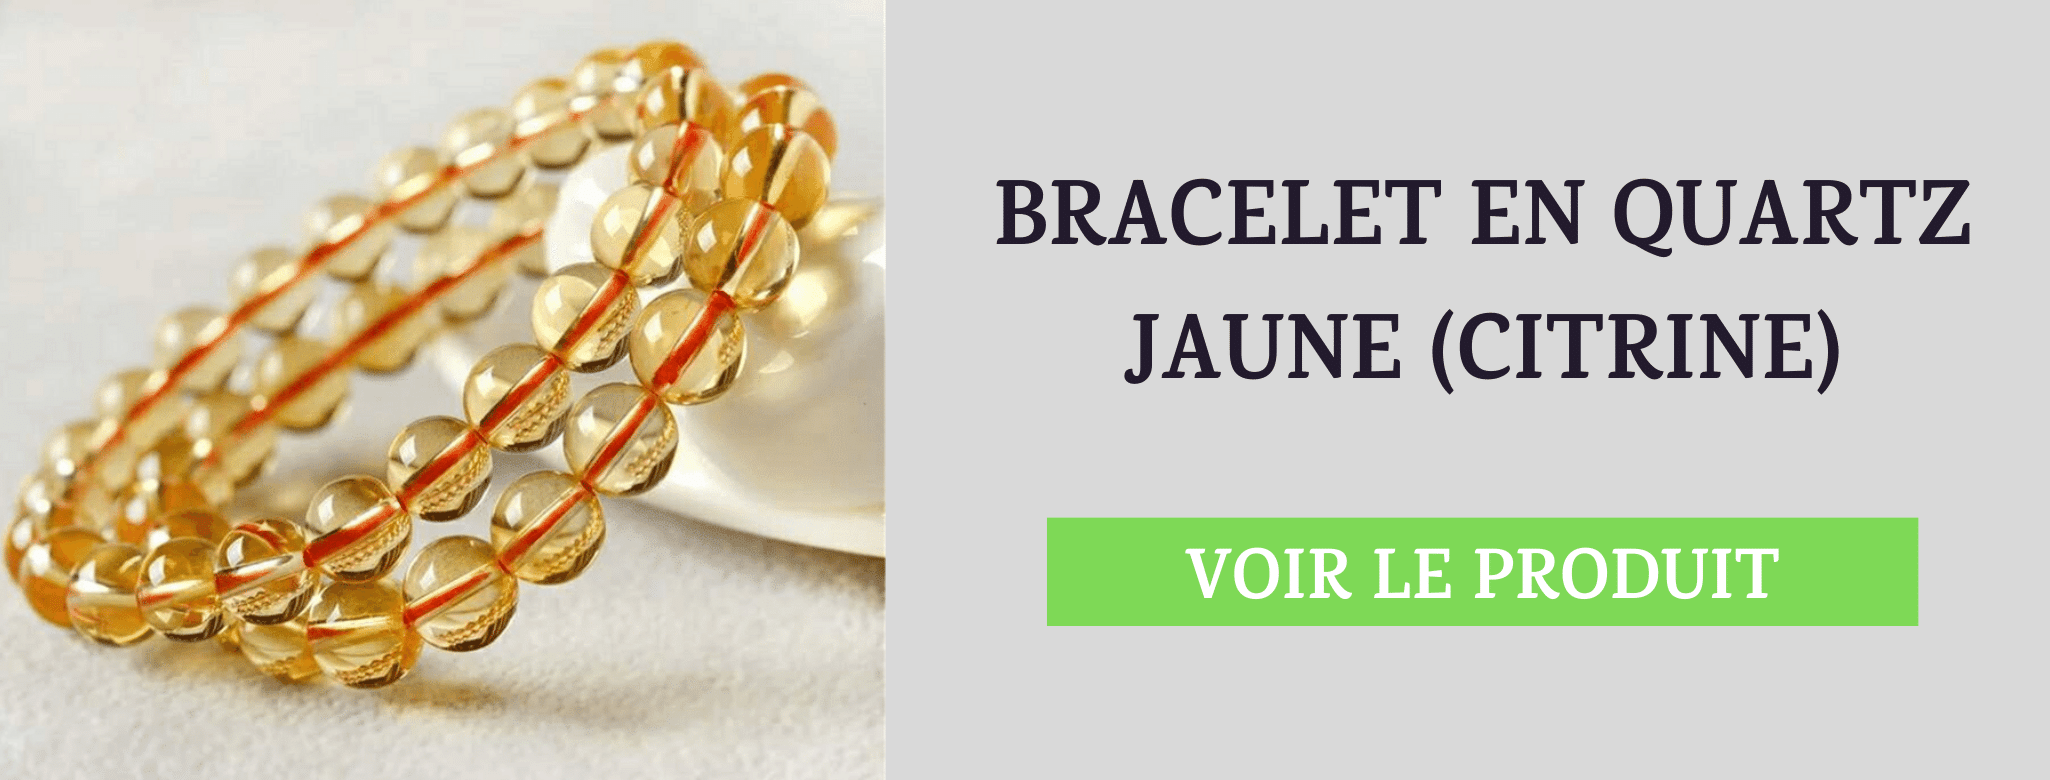 Bracelet Quartz Jaune